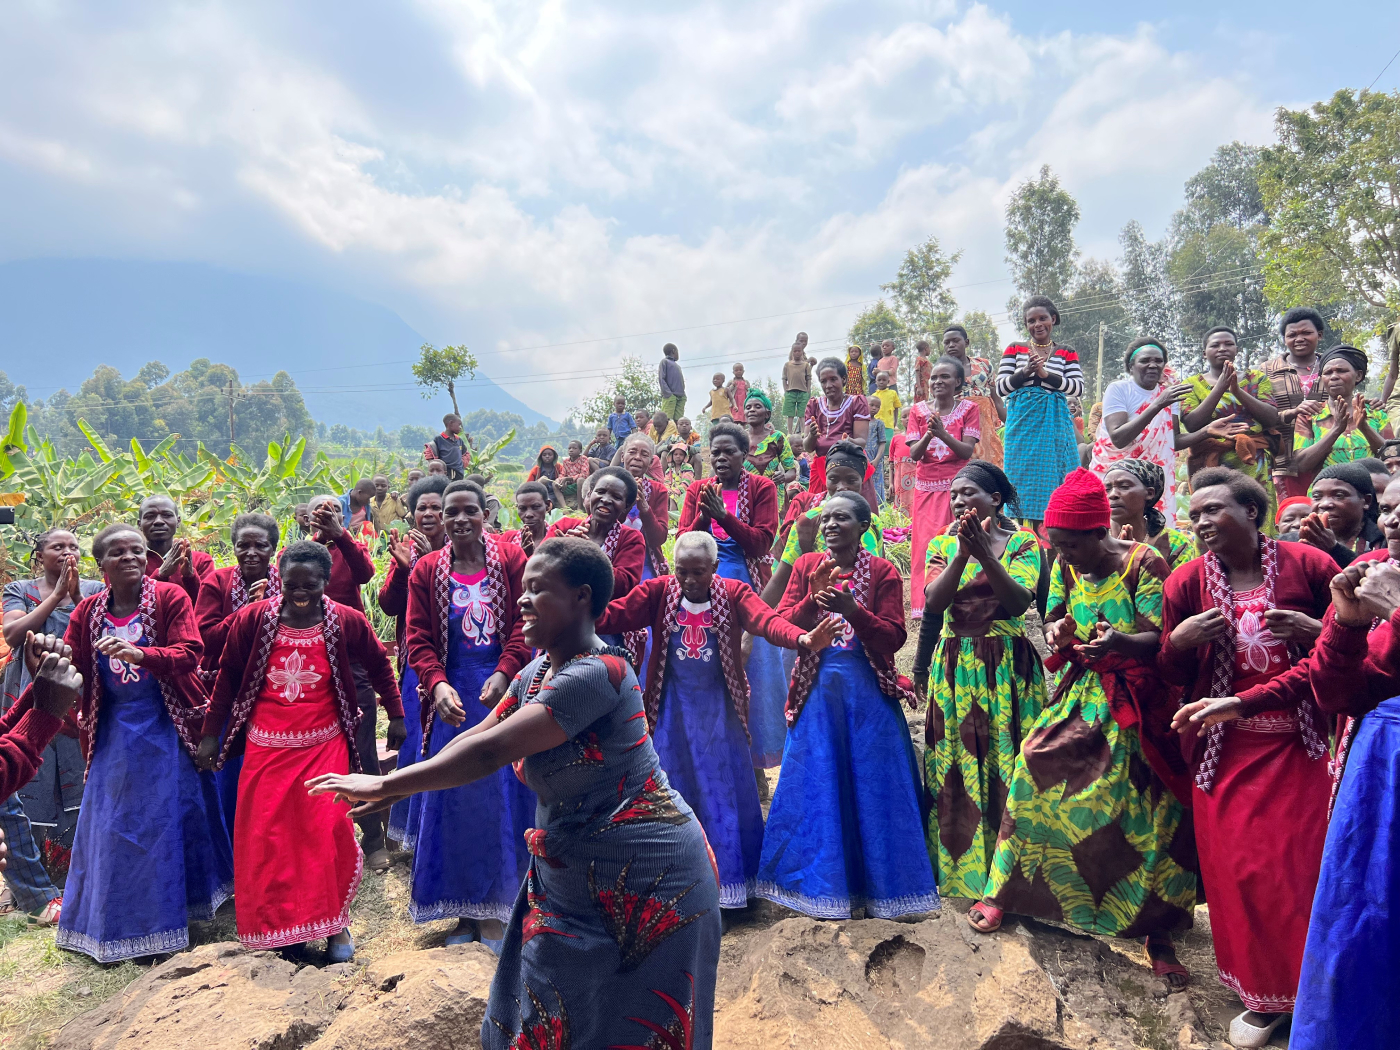 Celebration in late July with the women-led cooperative Imbereheza Gahunga in Rwanda. Image credit: Courtesy of Katie Frohardt